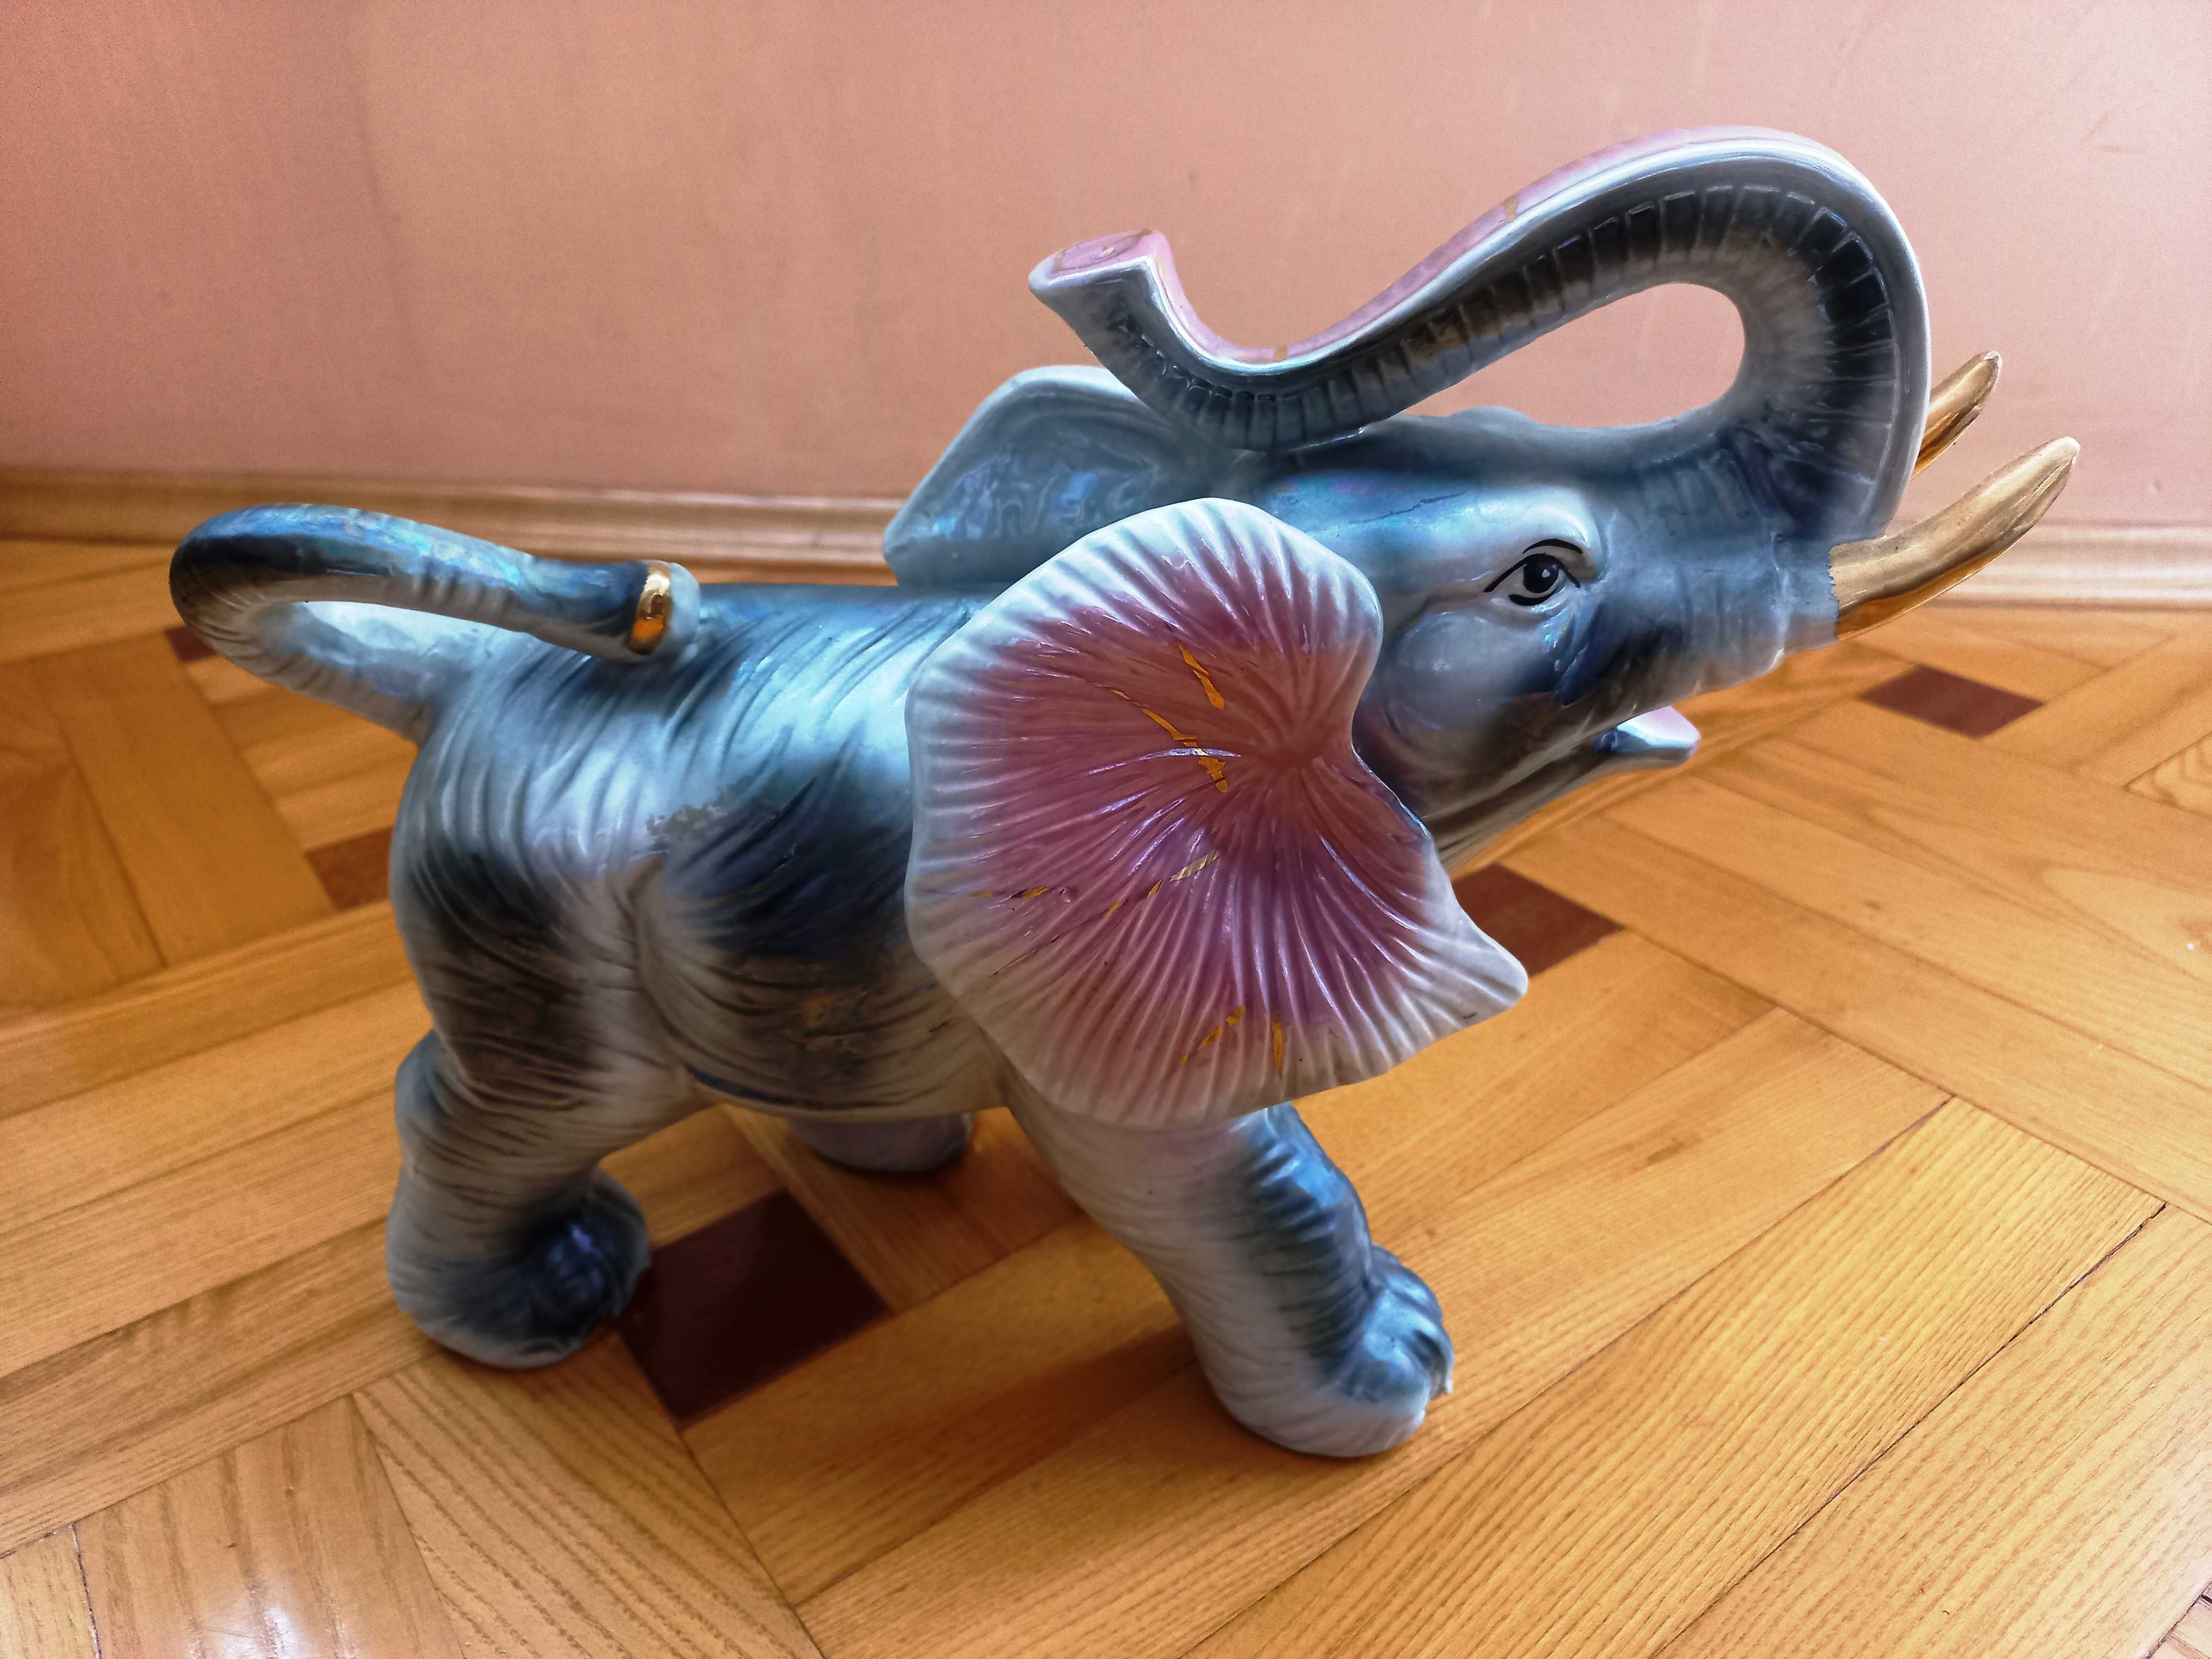 Idealny prezent - figurka słonia, słoń z podniesioną trąbą - duży